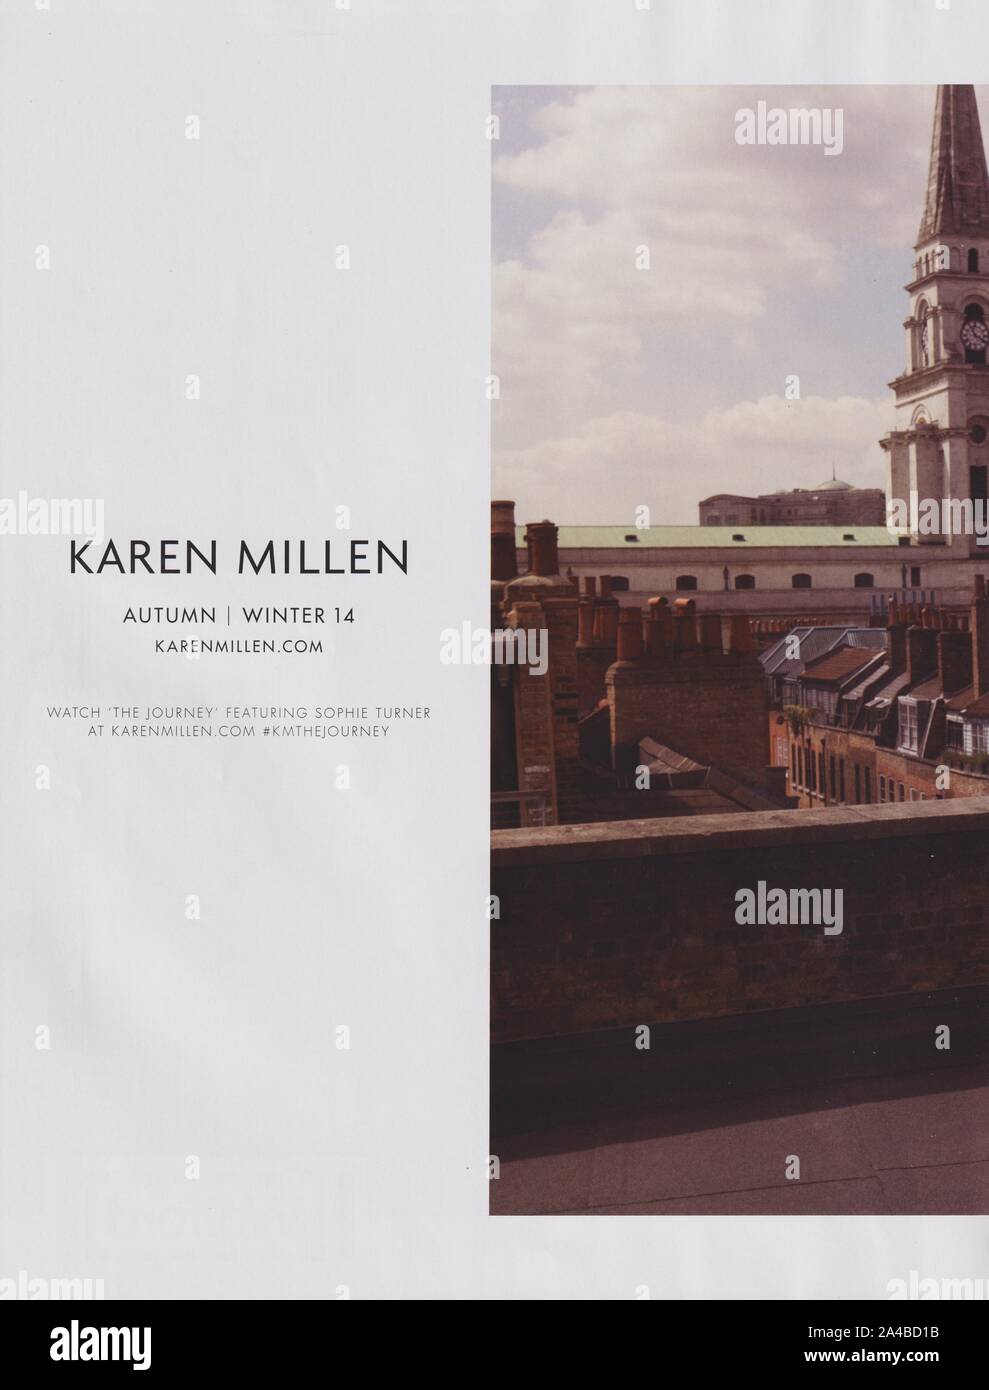 Plakat werbung Karen Millen Fashion House mit Sophie Turner in Papier Magazin von 2014 Jahr, Werbung, kreative Karen Millen 2010 s Anzeige Stockfoto